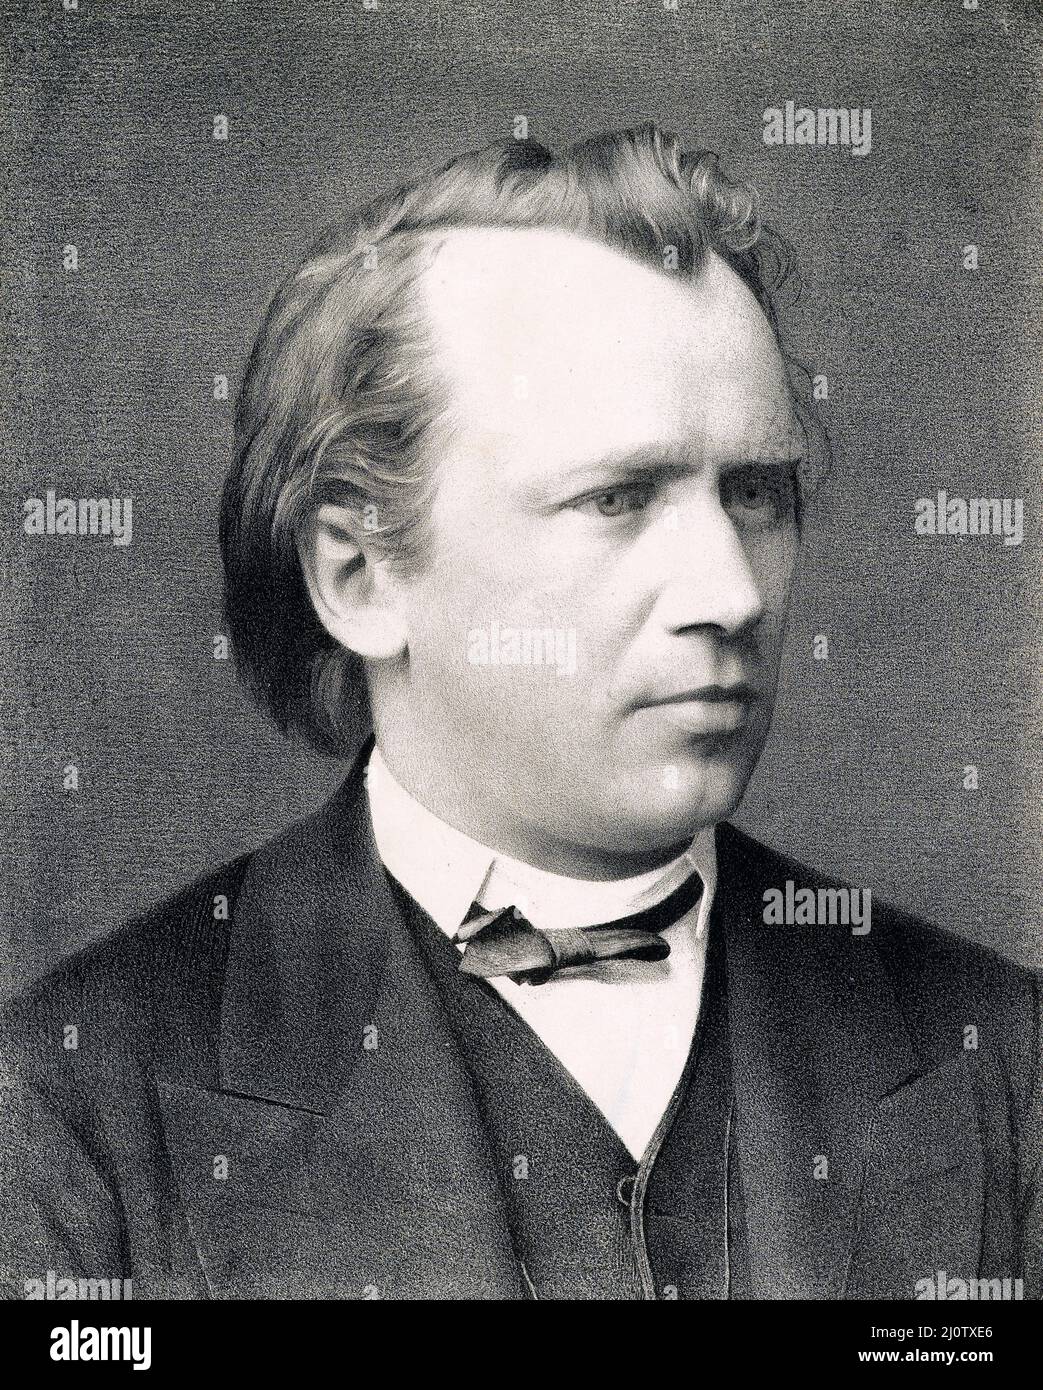 Porträt des deutschen Komponisten Johannes Brahms (*7. Mai 1833 in Hamburg; gestorben 3. April 1897 in Wien) Datum 1865 Stockfoto